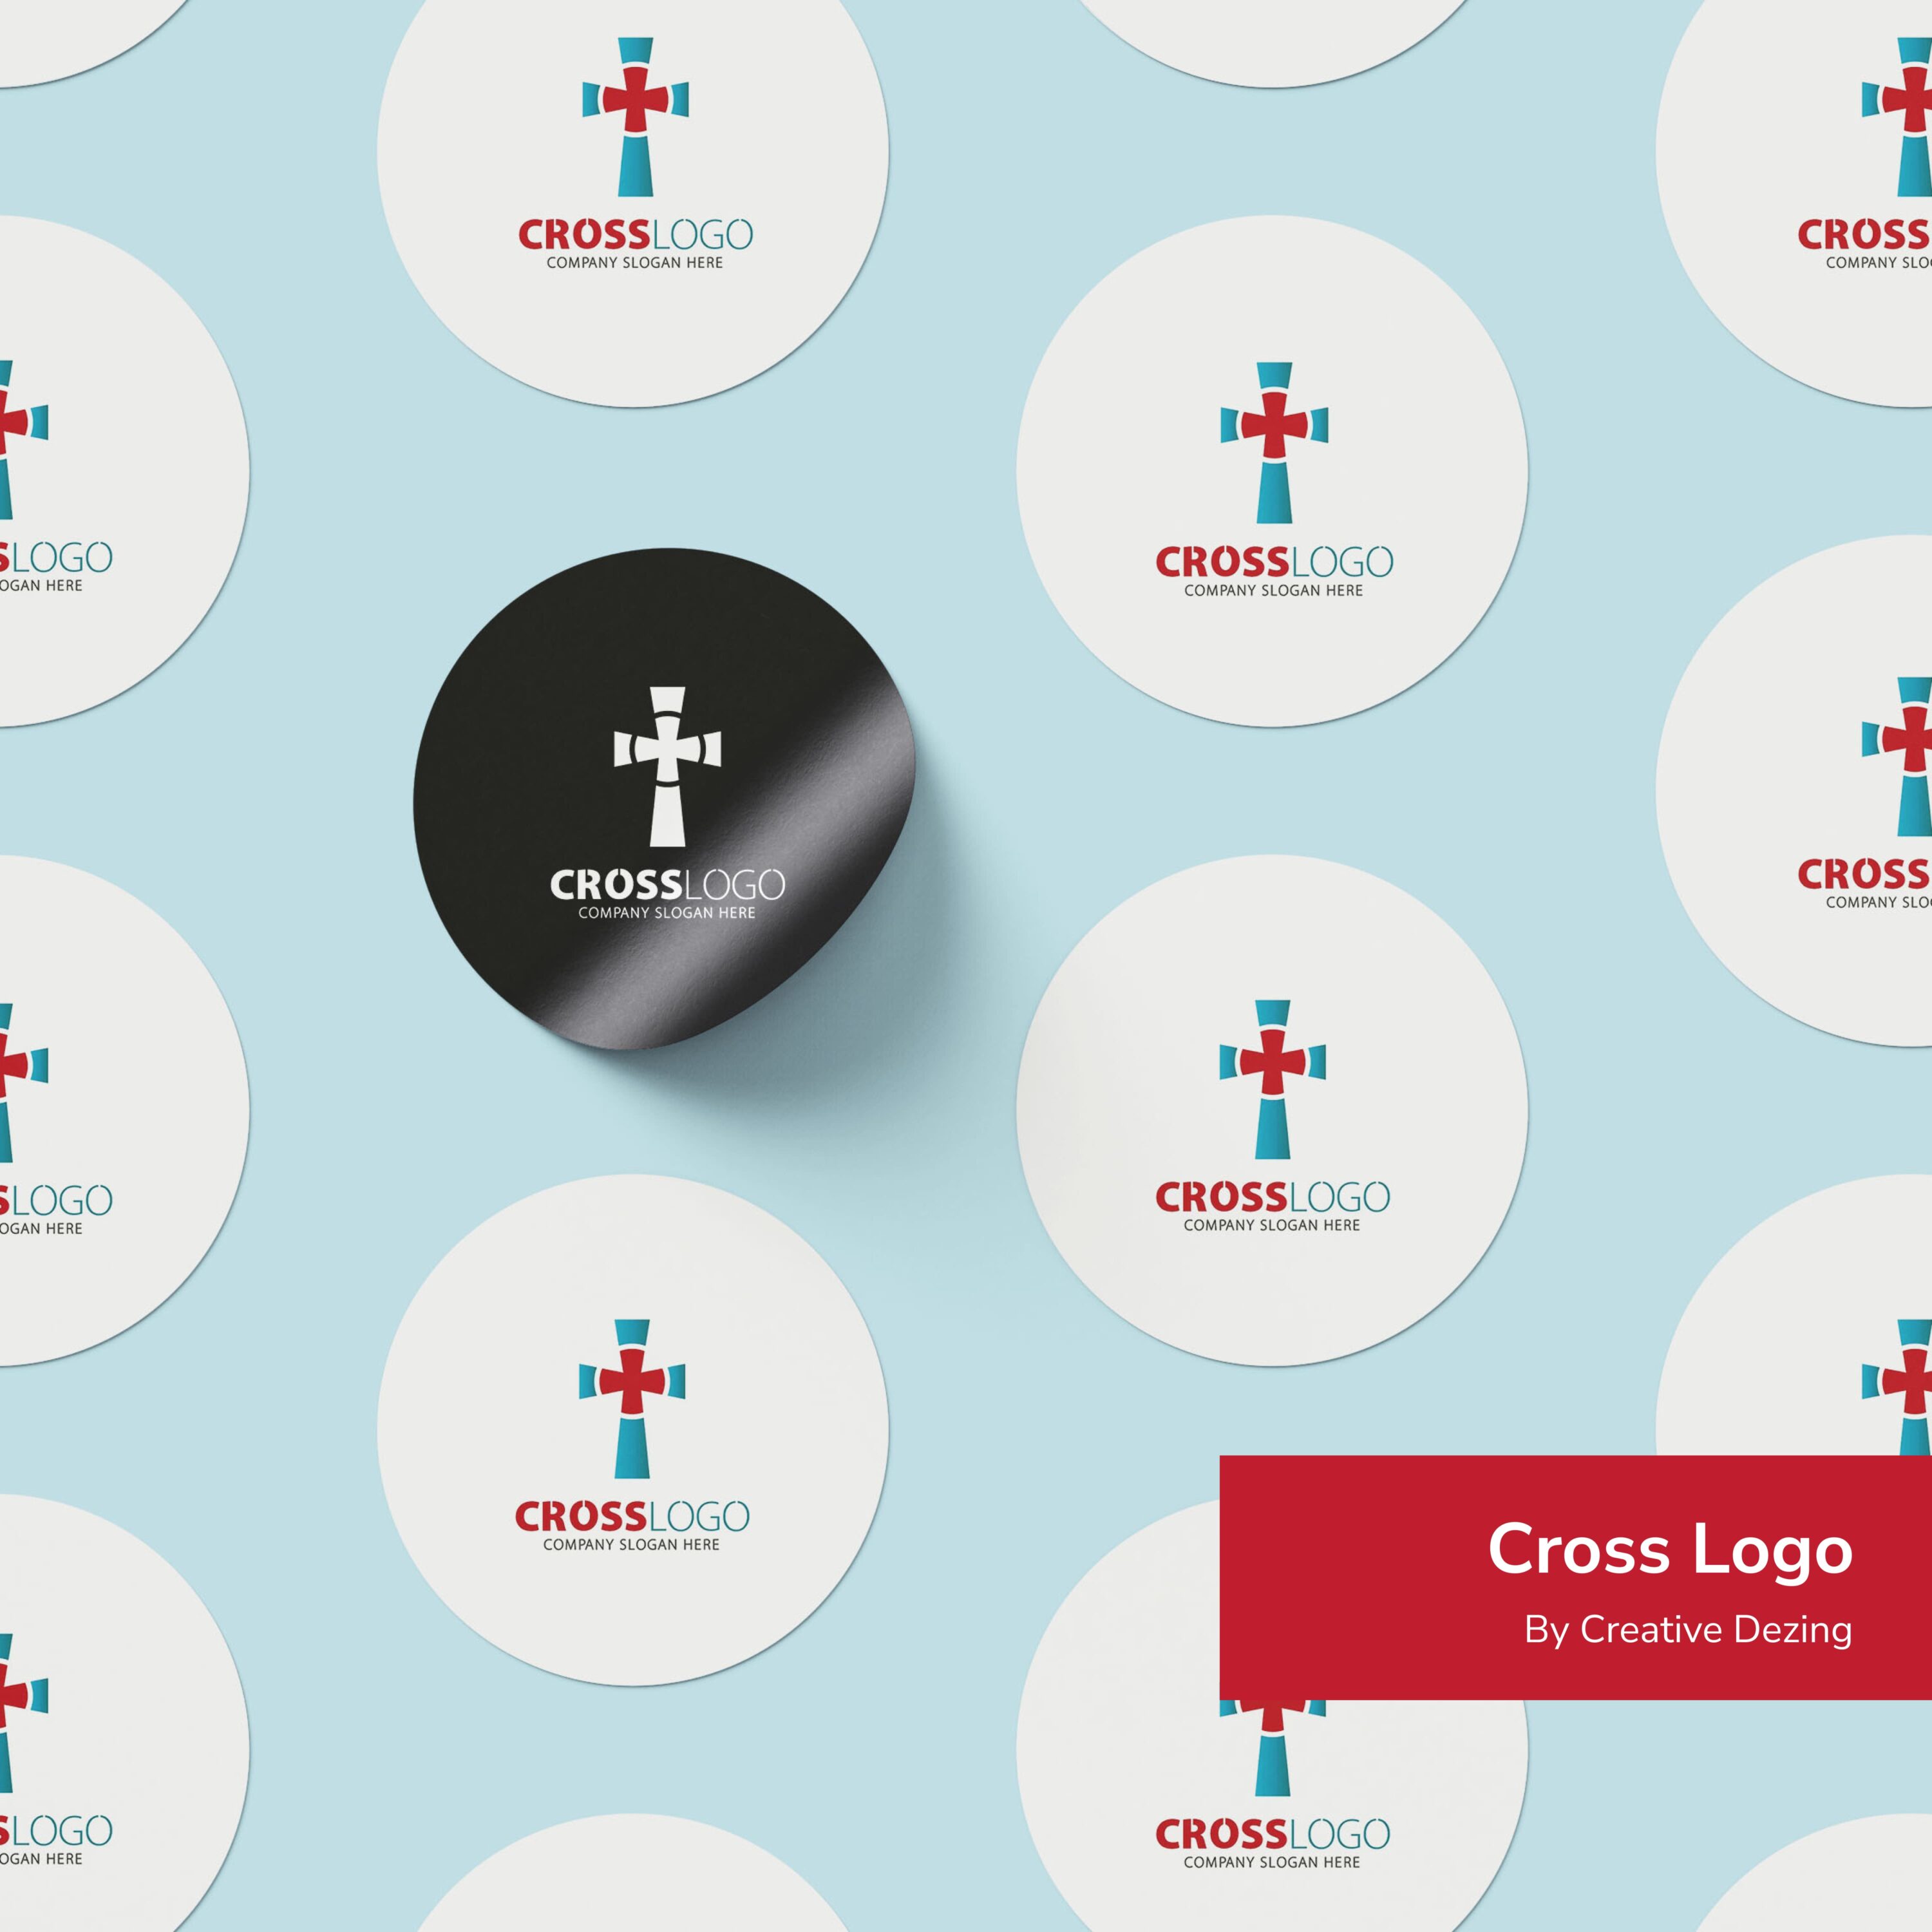 Cross Logo cover.